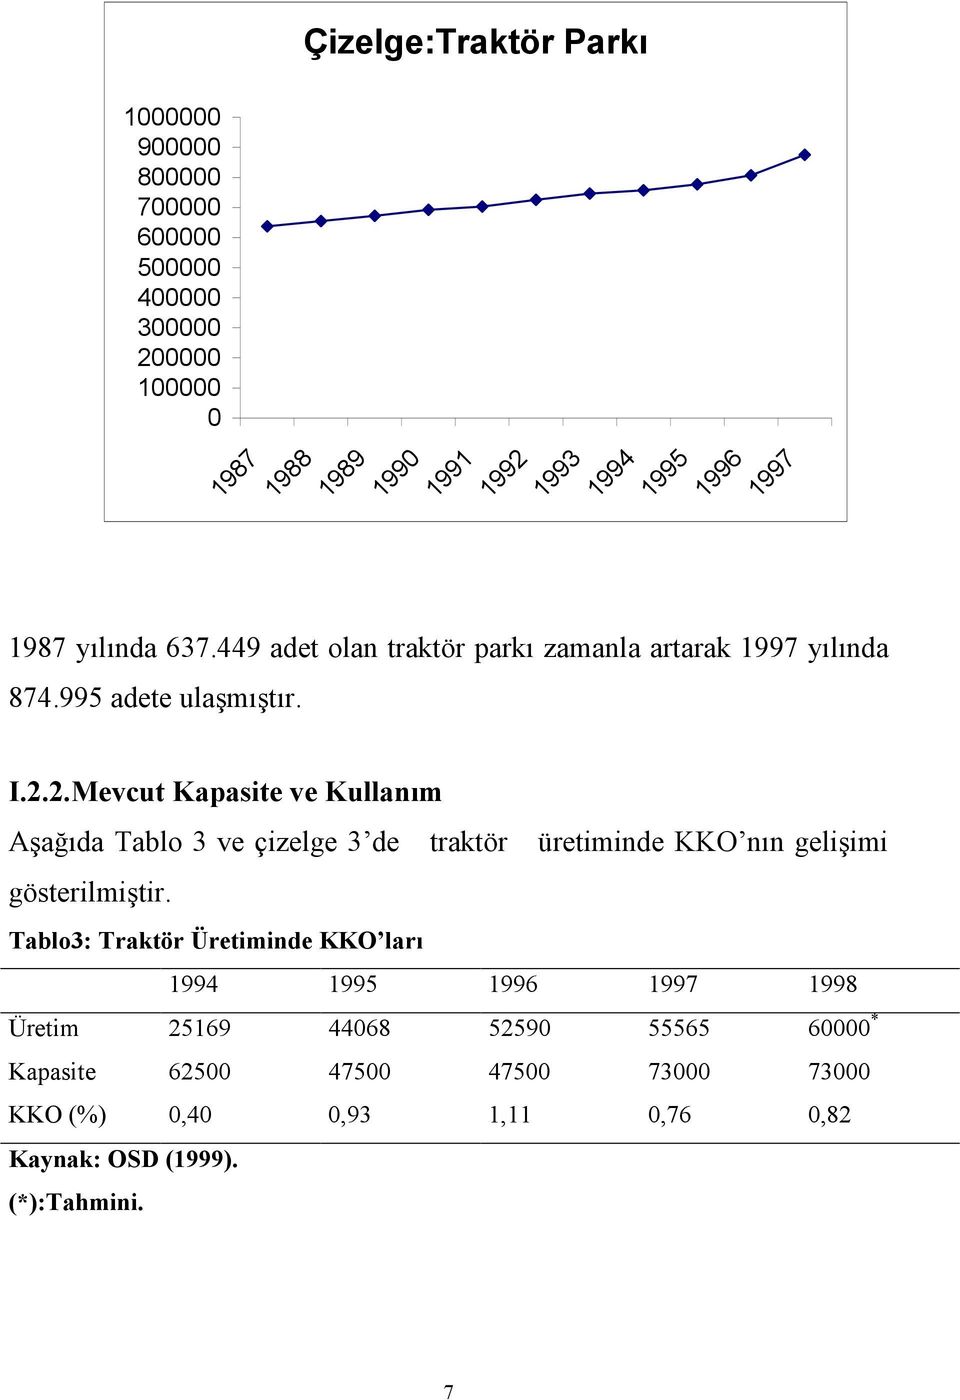 Çizelge:Traktör Parkı 1987 1988 1989 1990 1991 1992 